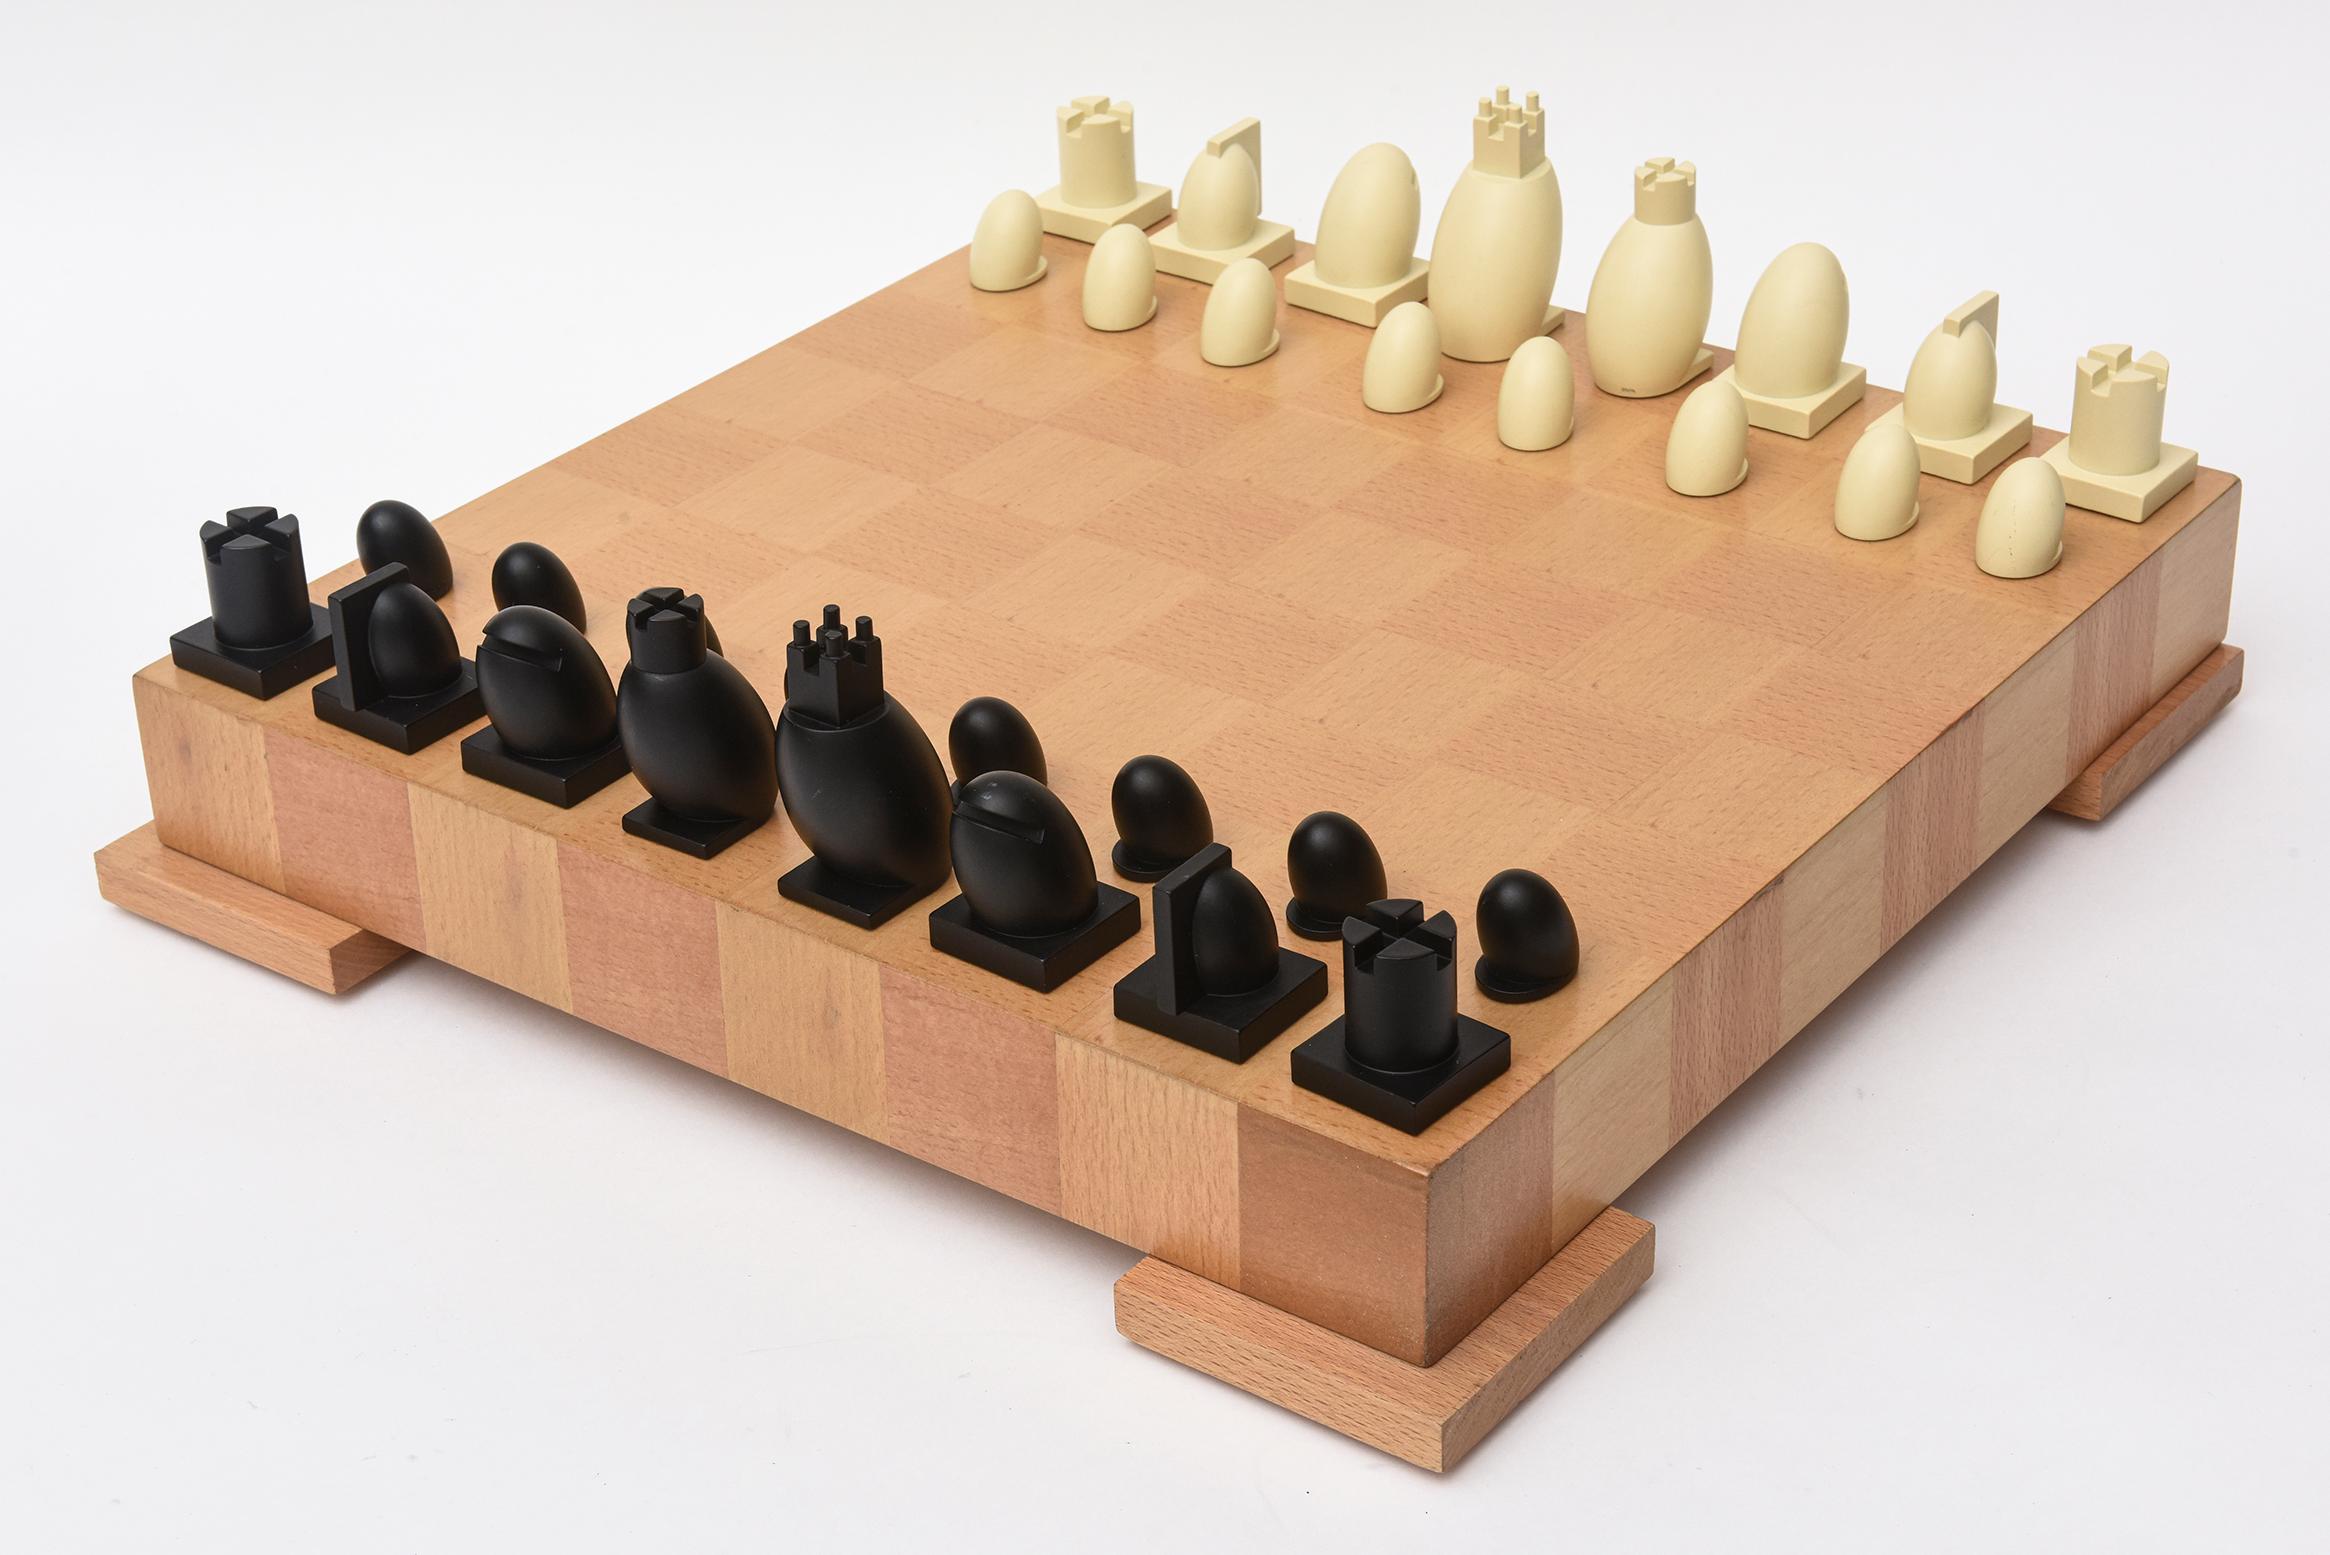 Ce jeu d'échecs original Postmodern Michael Graves avec des pièces de dames a été entièrement restauré avec le bois qui est 2 variantes d'érable. 
Le bois a été refait et un nouveau feutre a été posé sur le fond. Les joueurs de résine sont une